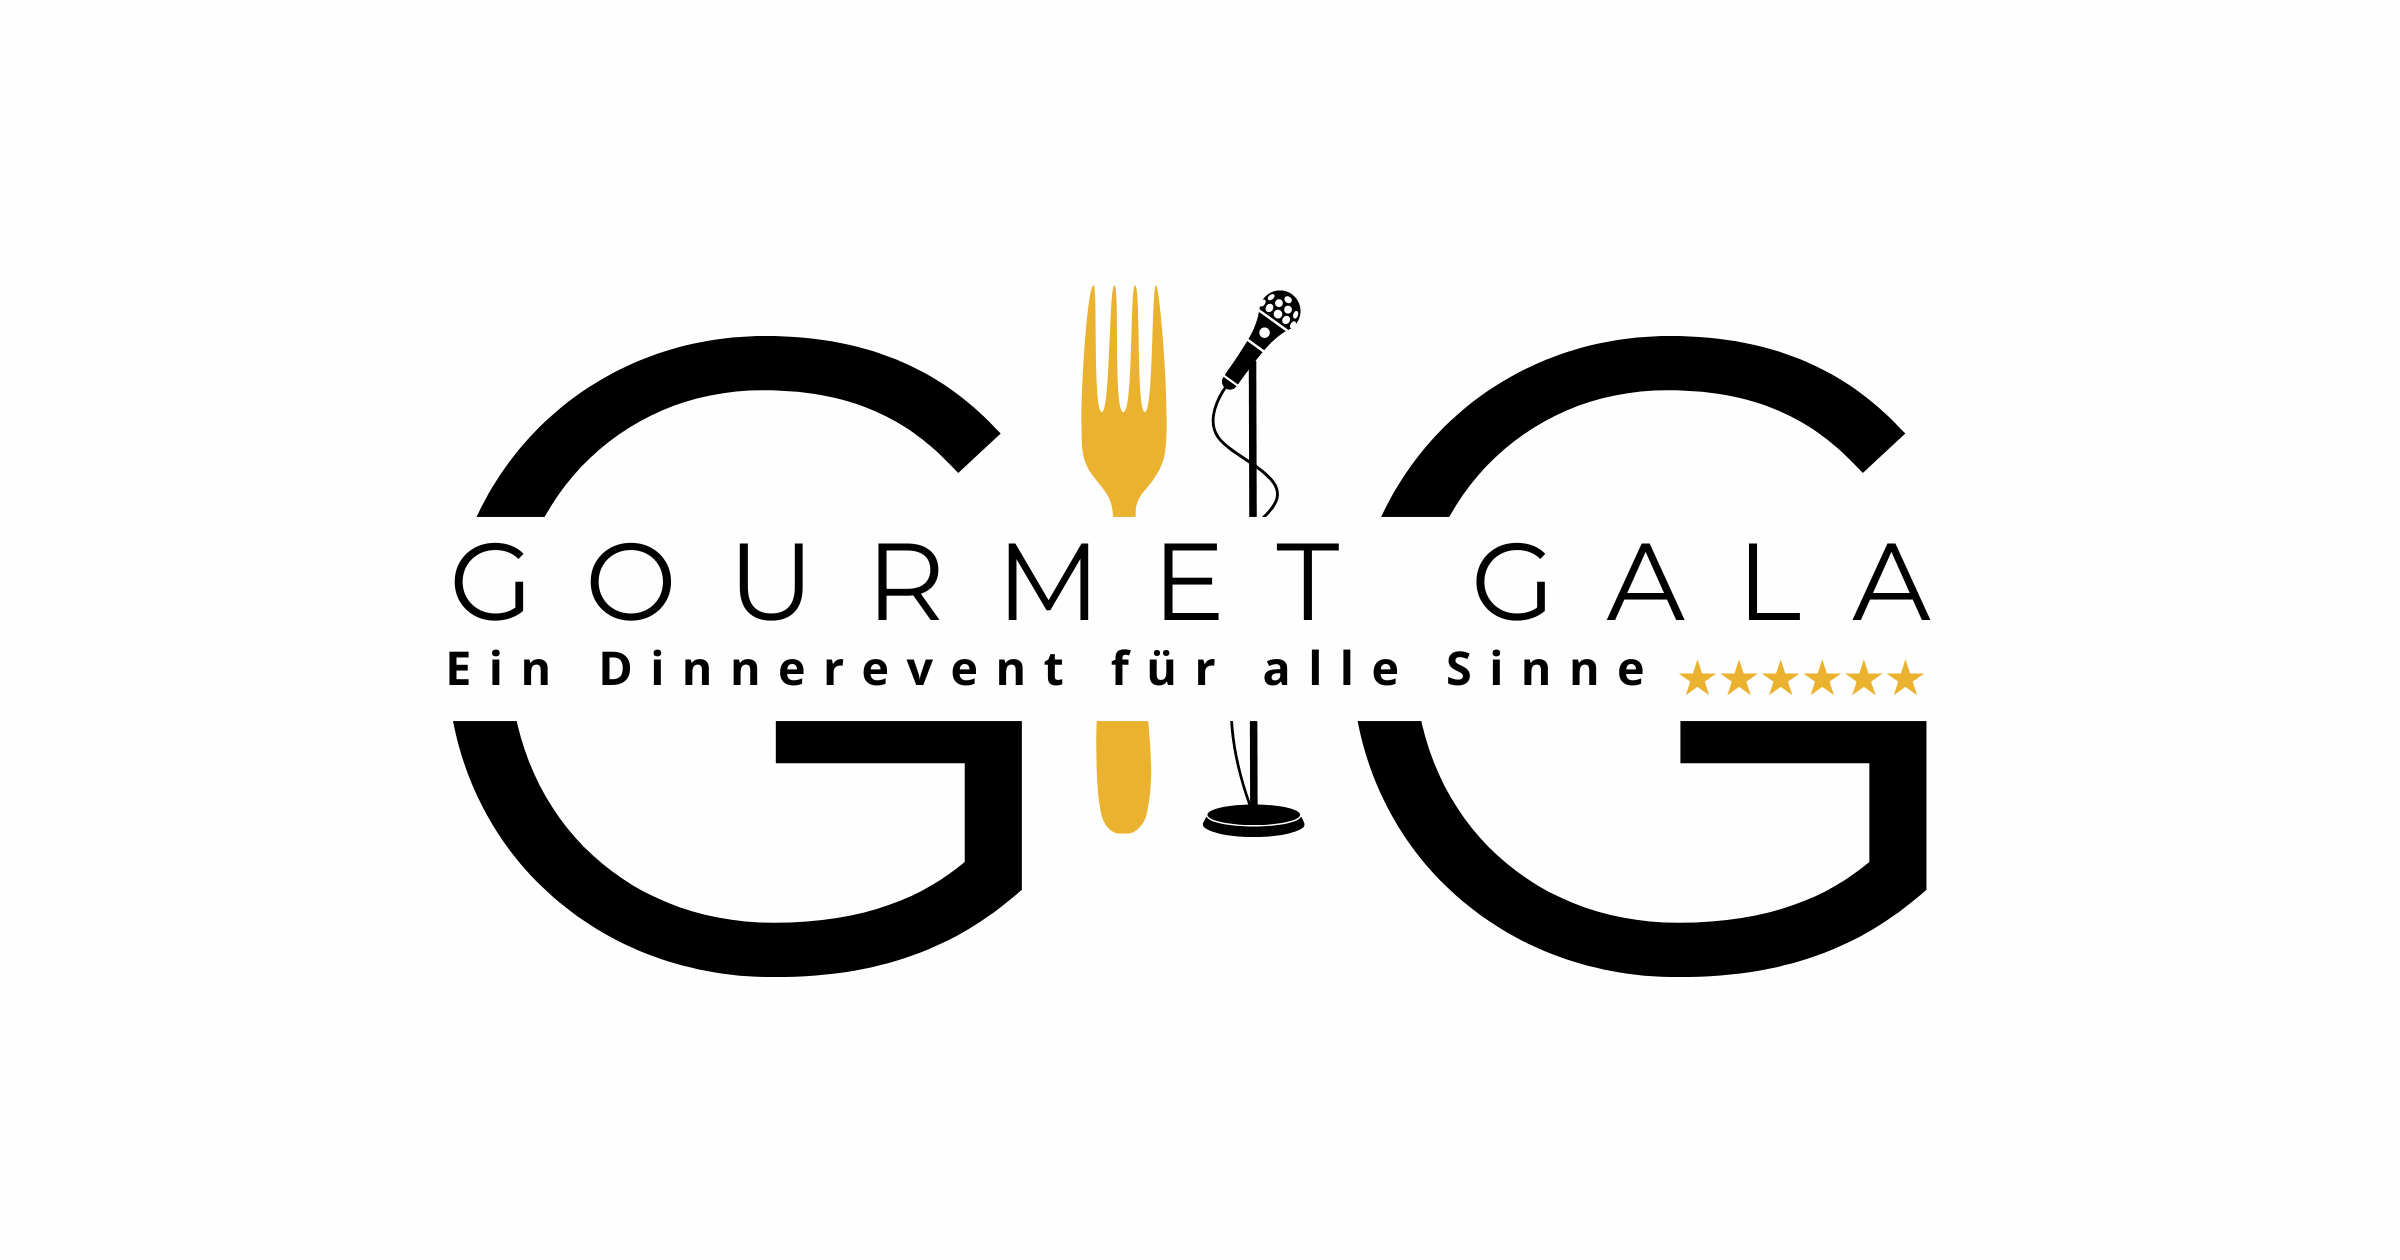 Gourmet Gala - Ein Dinnerevent für alle Sinne